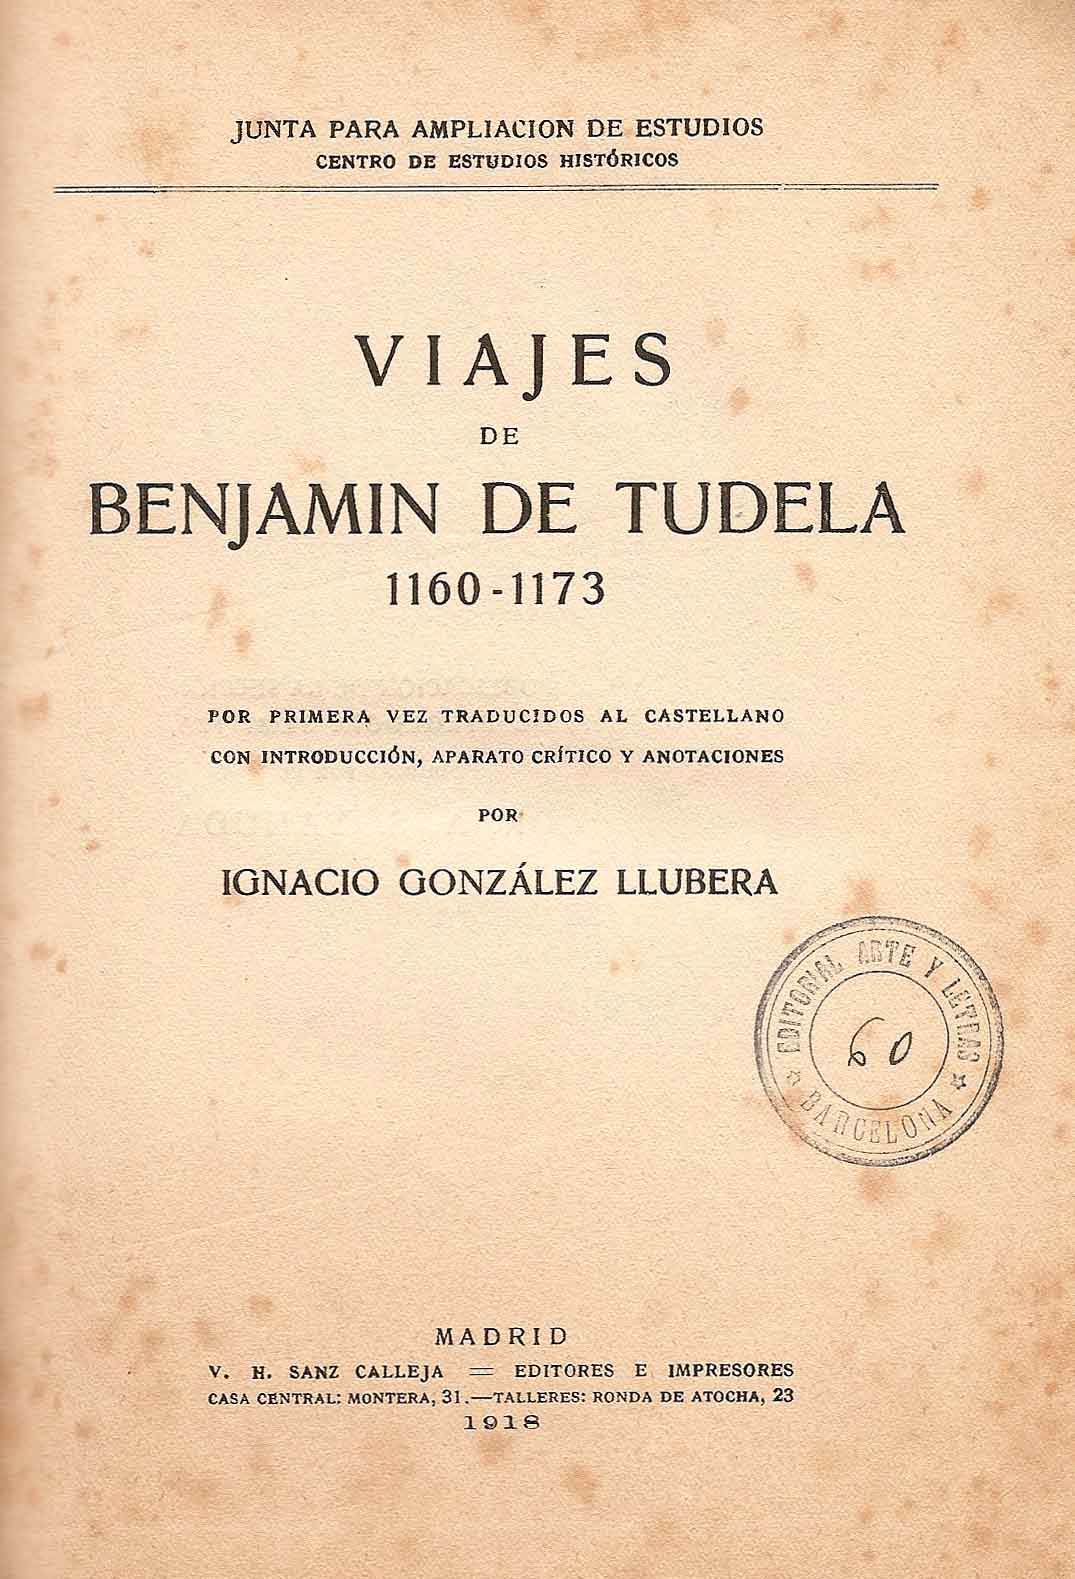 Imagen de portada del libro Viajes de Benjamín de Tudela